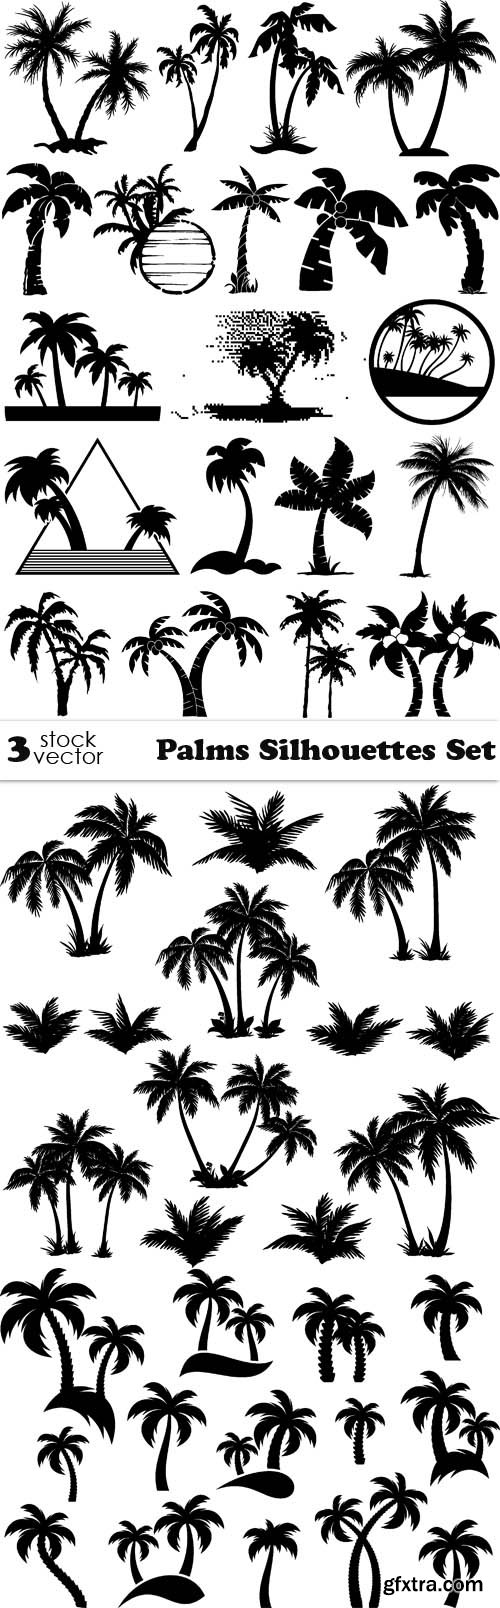 Vectors - Palms Silhouettes Set